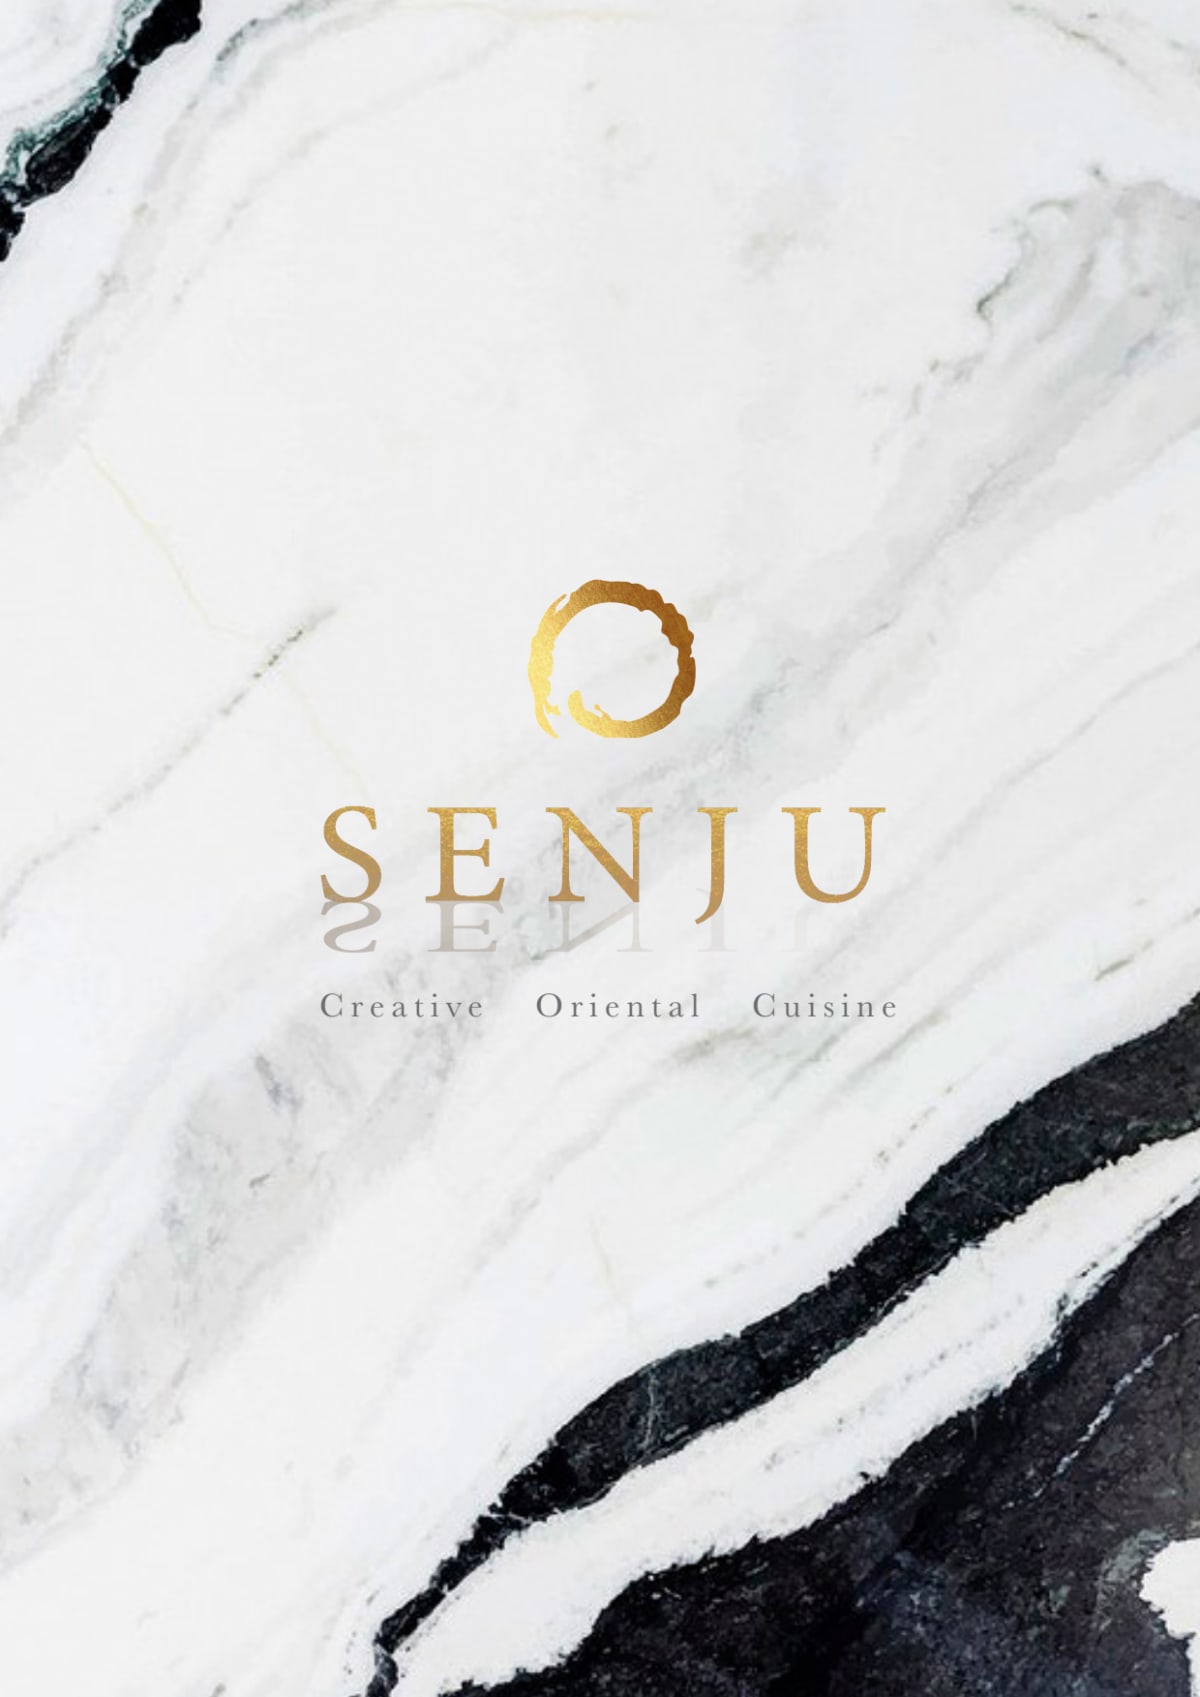 Senju menu